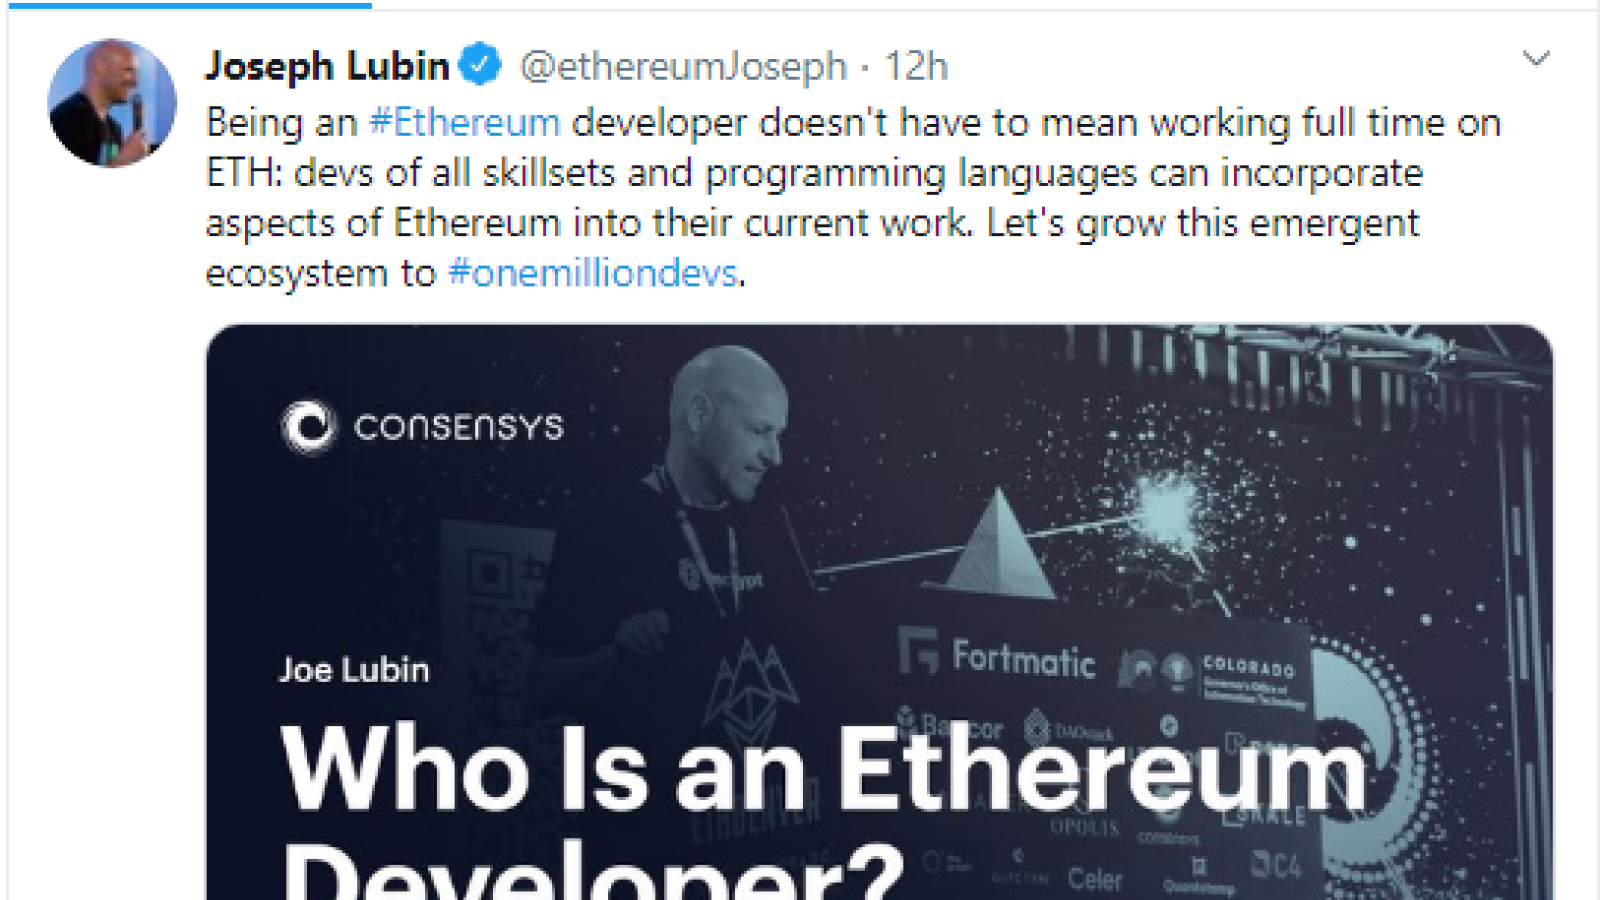 Joe Lubin explains who is Ethereum developer